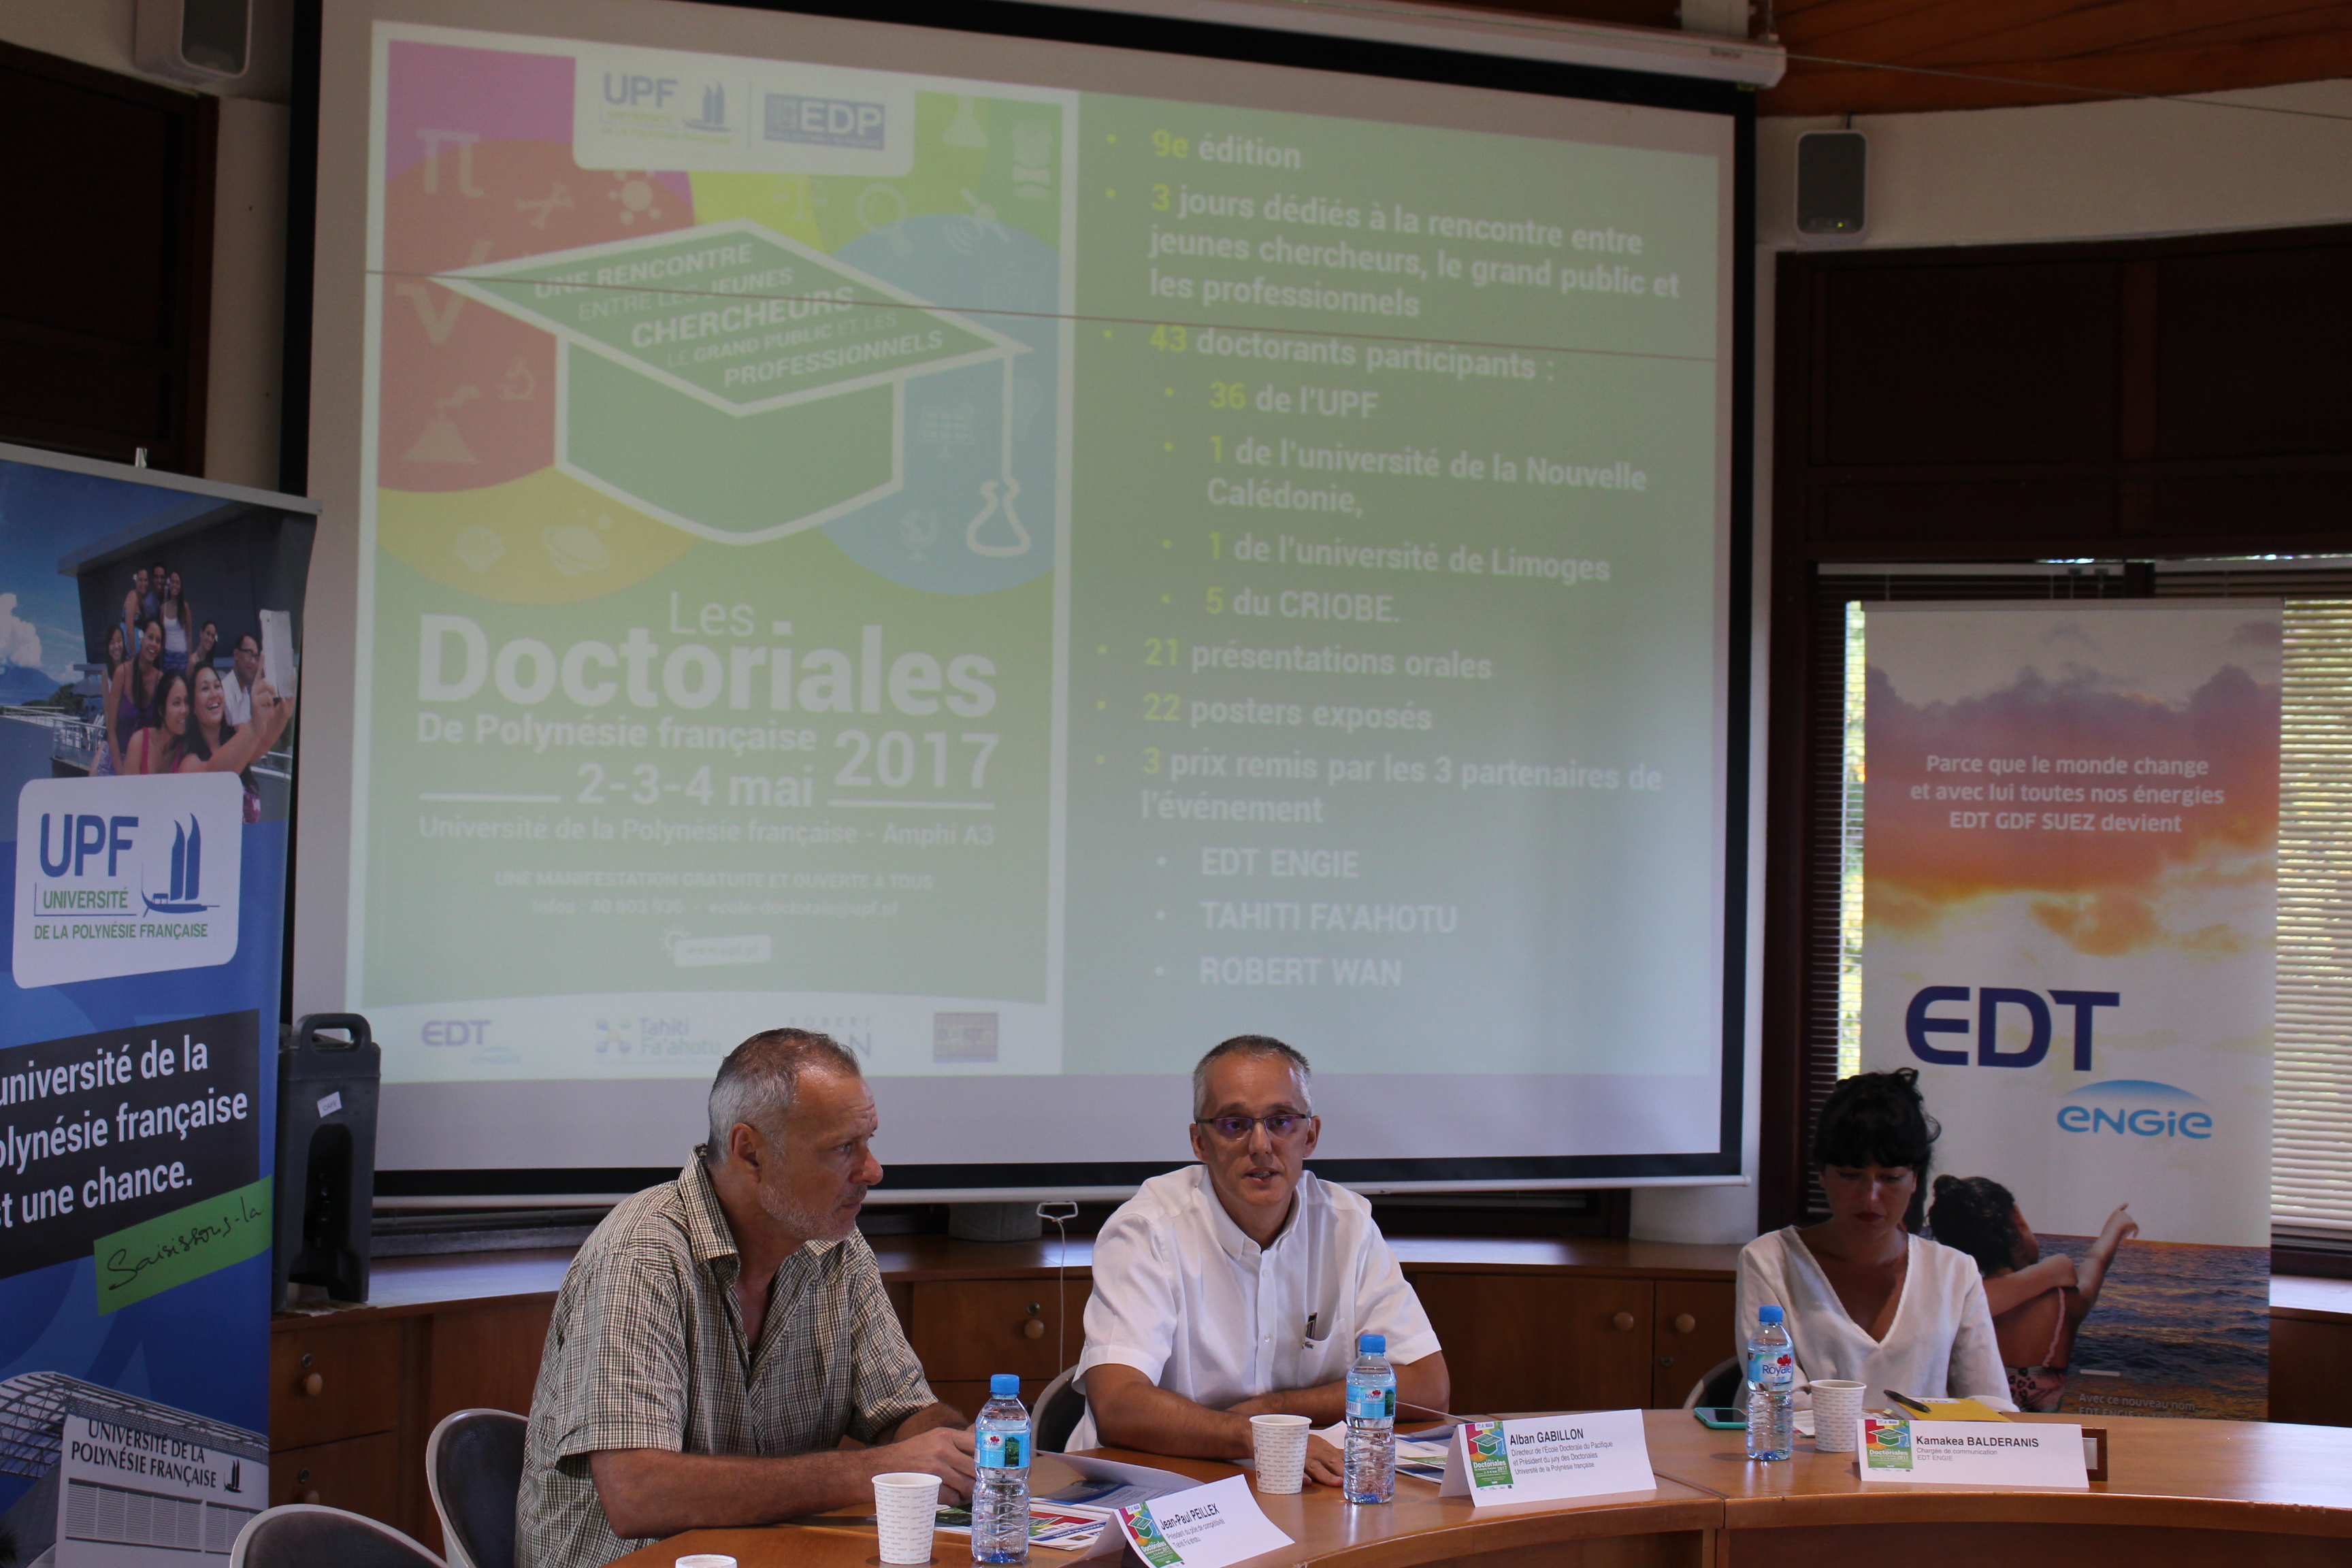 En 2017 les Doctoriales s'ouvrent à tous les doctorants de Polynésie